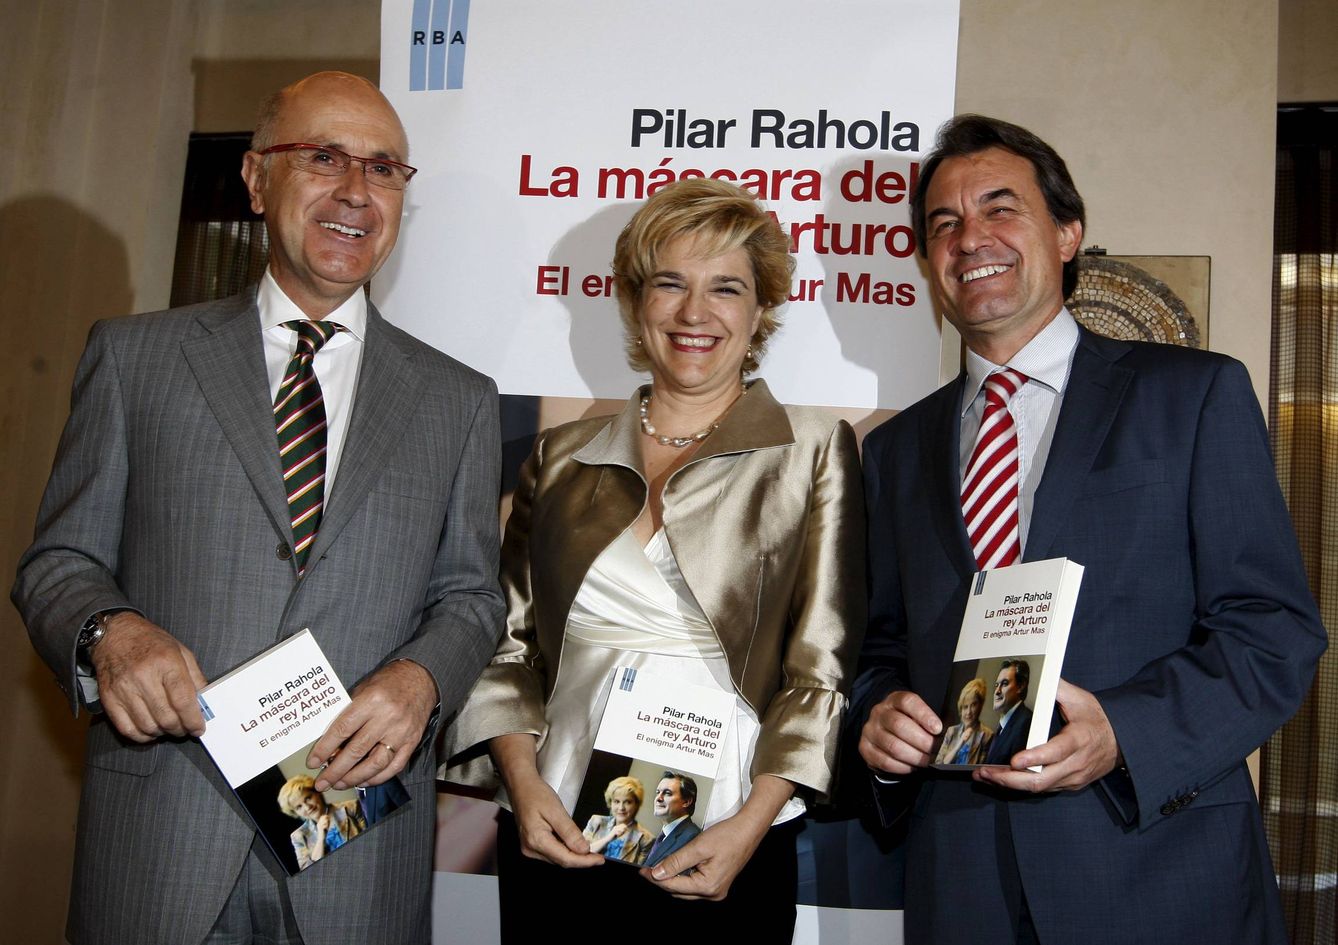 Josep Antoni Duran i Lleida, Pilar Rahola y Artur Mas, en la presentación de 'La máscara del rey Arturo'.